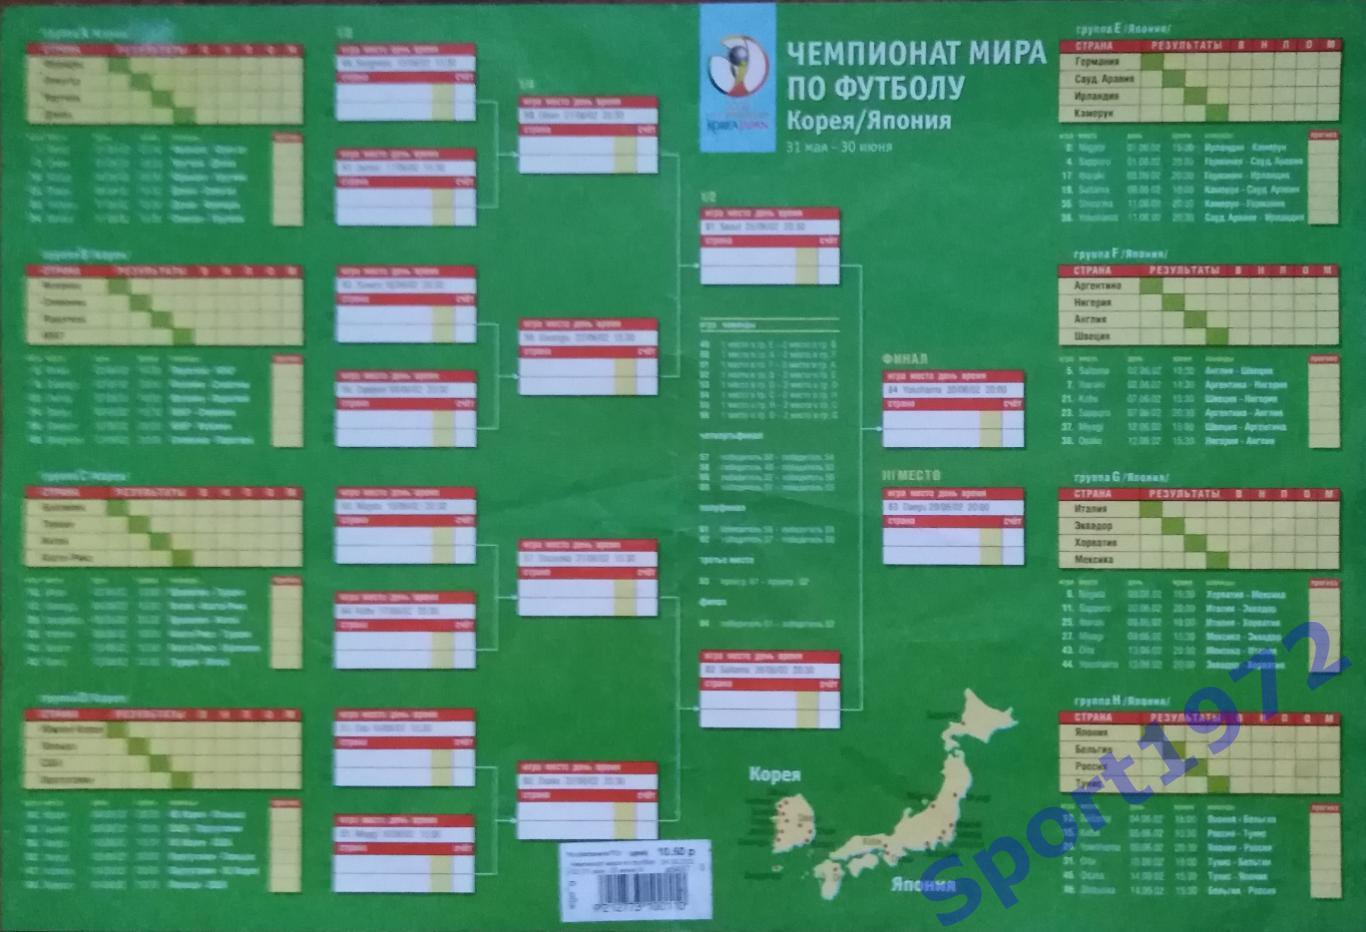 Чемпионат мира по футболу 2002. Корея/Япония. Календарь игр. 1